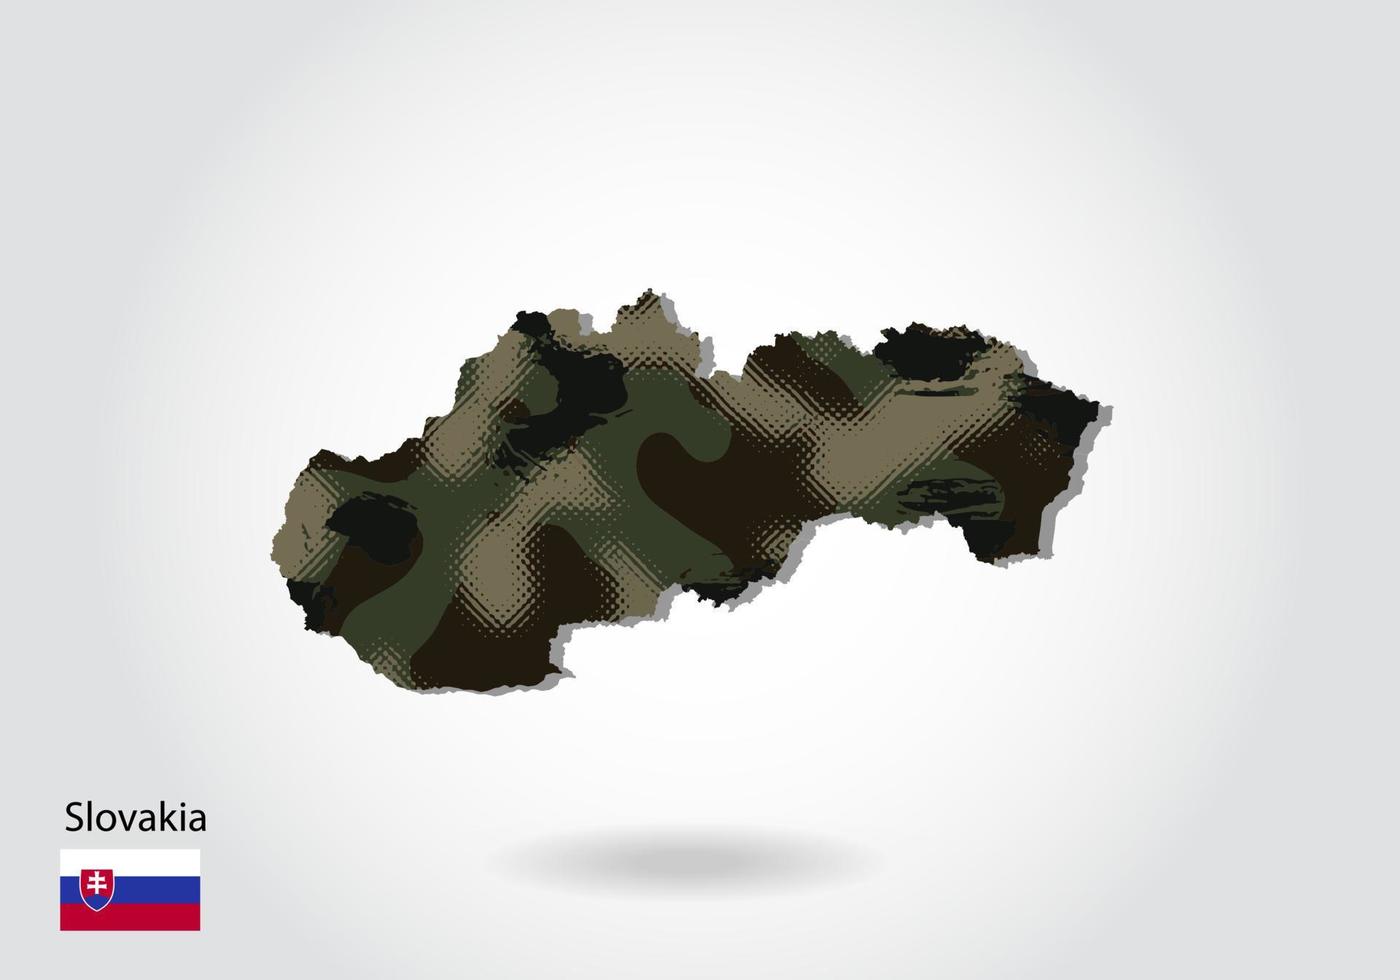 mapa da Eslováquia com padrão de camuflagem, floresta - textura verde no mapa. conceito militar para exército, soldado e guerra. brasão, bandeira. vetor